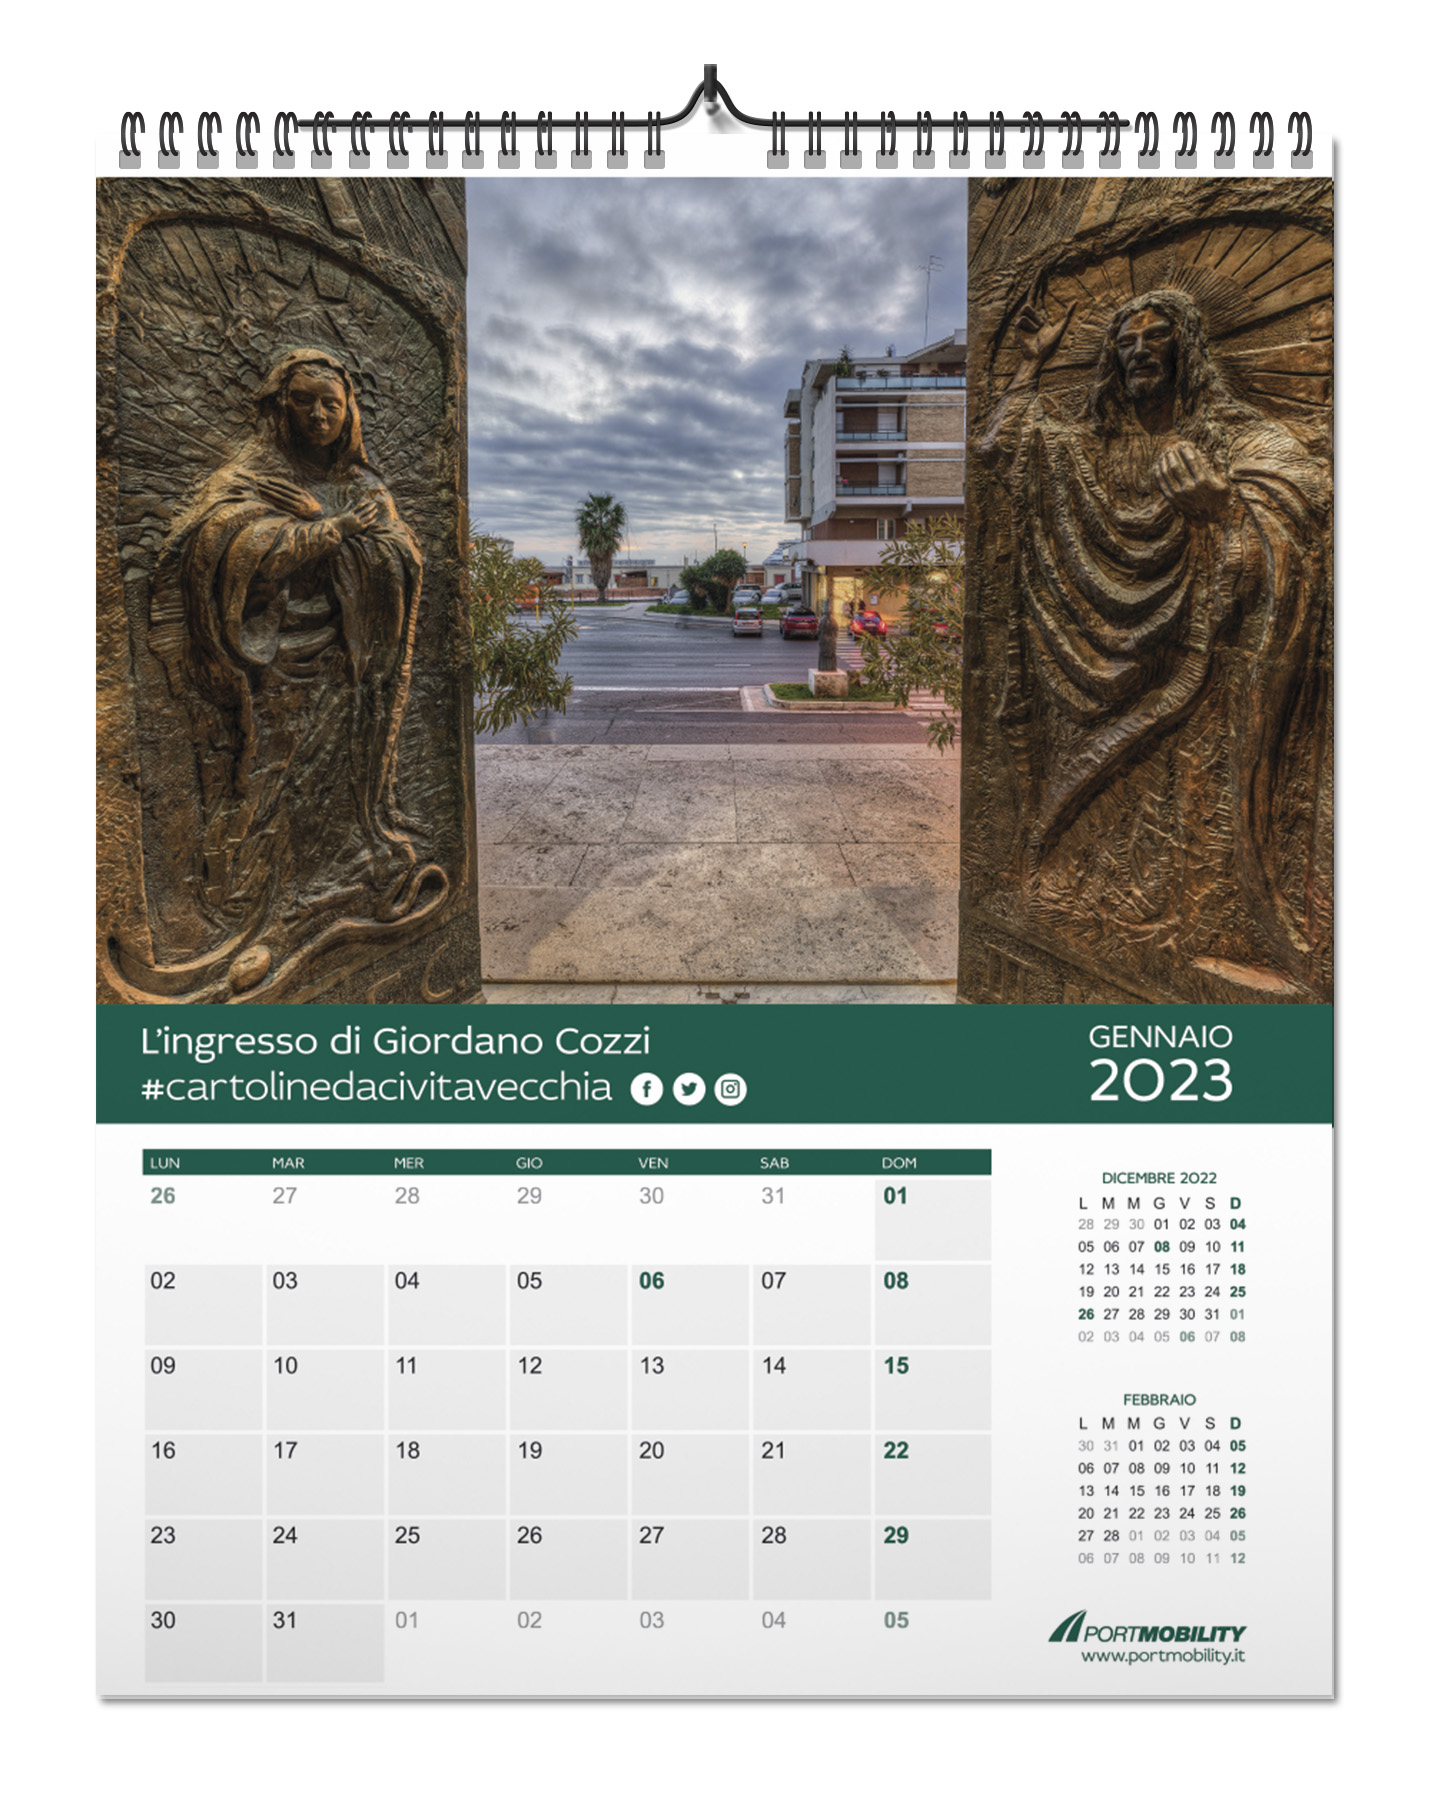 Cartoline da Civitavecchia 2023: il mese di gennaio 